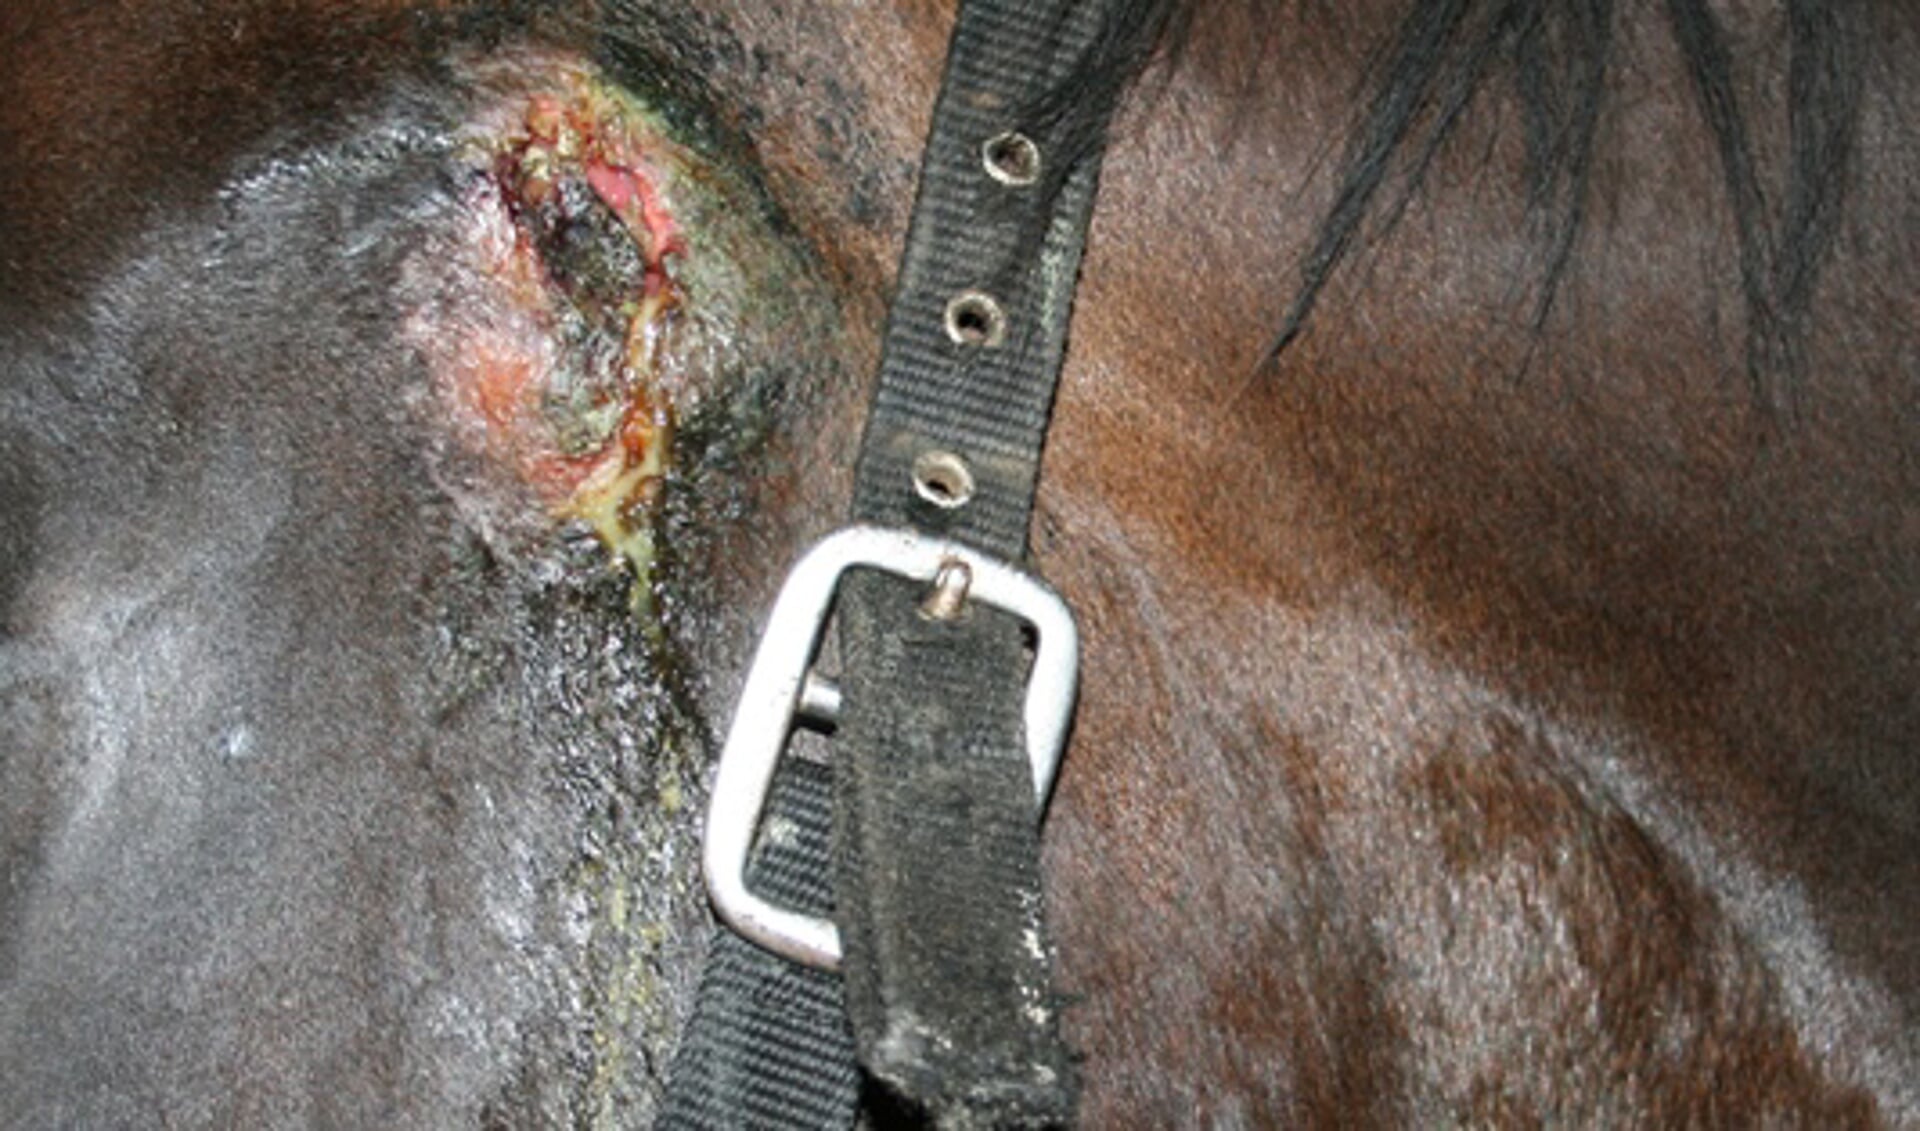 Droes kan verregaande gevolgen hebben, zo blijkt ook uit deze foto van Paardenarts.nl. Deze afbeelding betreft geen paard van manege Elzenhof.